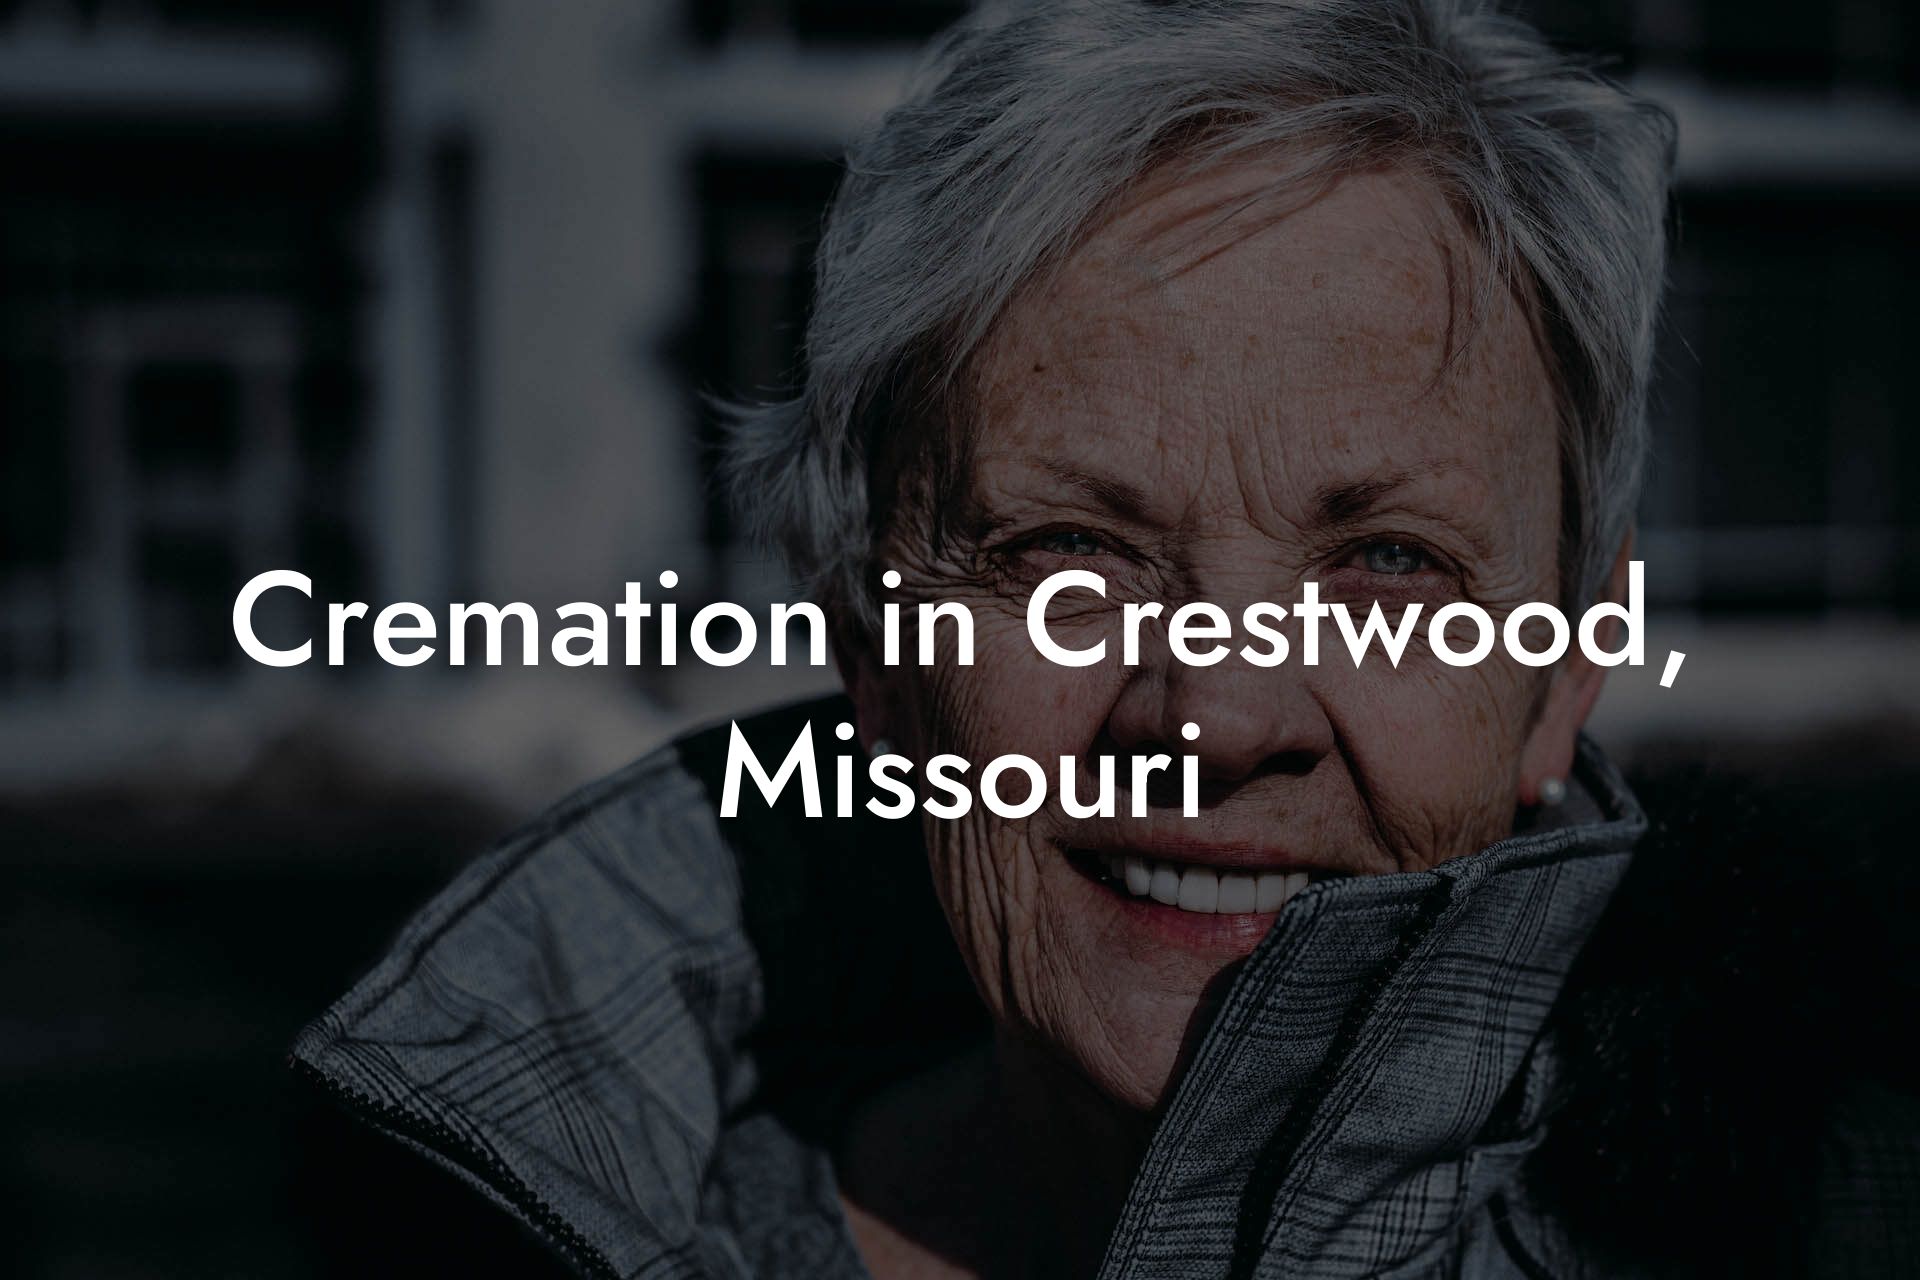 Cremation in Crestwood, Missouri